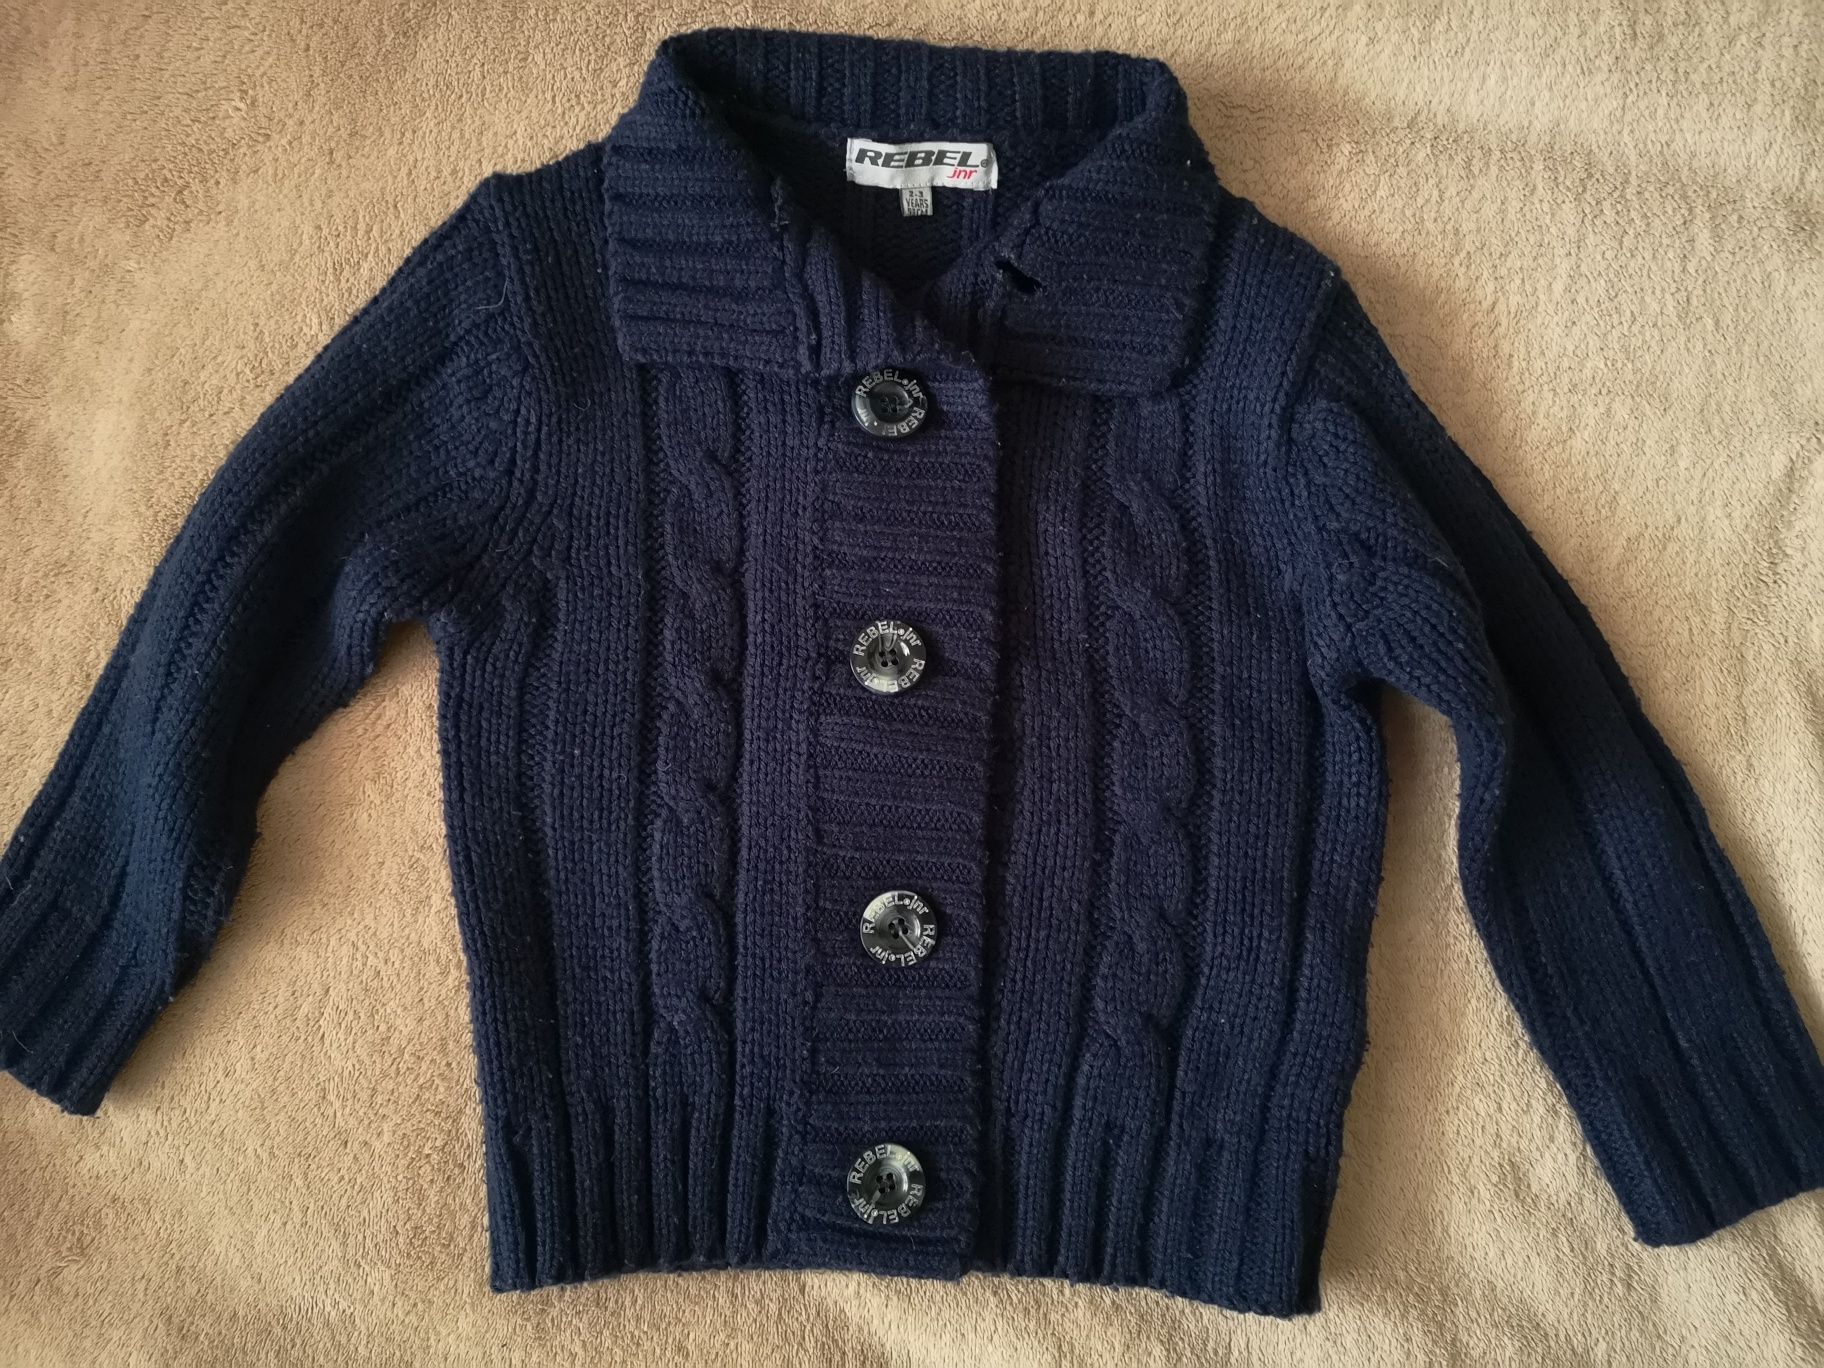 Gruby ciepły sweter na guziki firmy Rebel 2-3 lata